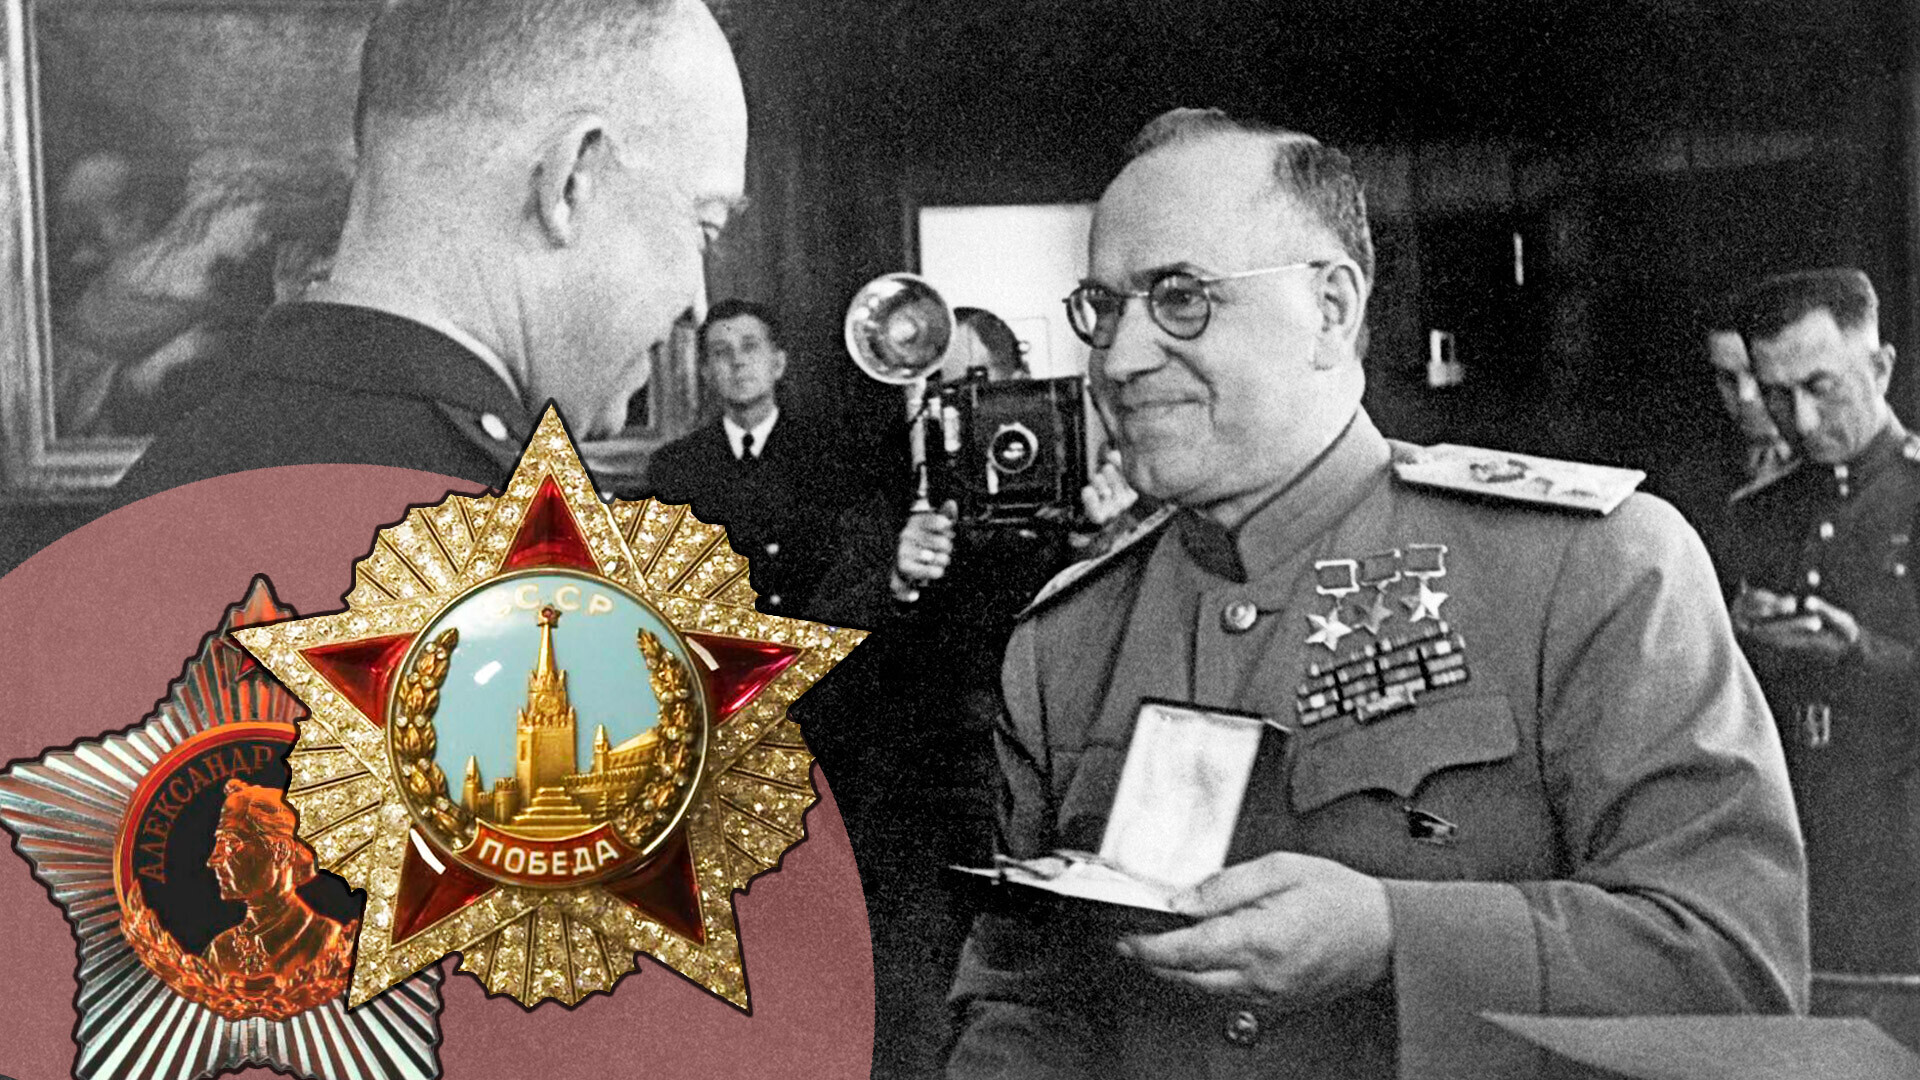 Marsekal Uni Soviet Georgy Zhukov mempersembahkan Orde Kemenangan kepada Jenderal Angkatan Darat Dwight David Eisenhower di Markas Tertinggi Pasukan Ekspedisi Sekutu di Frankfurt, Juni 1945.